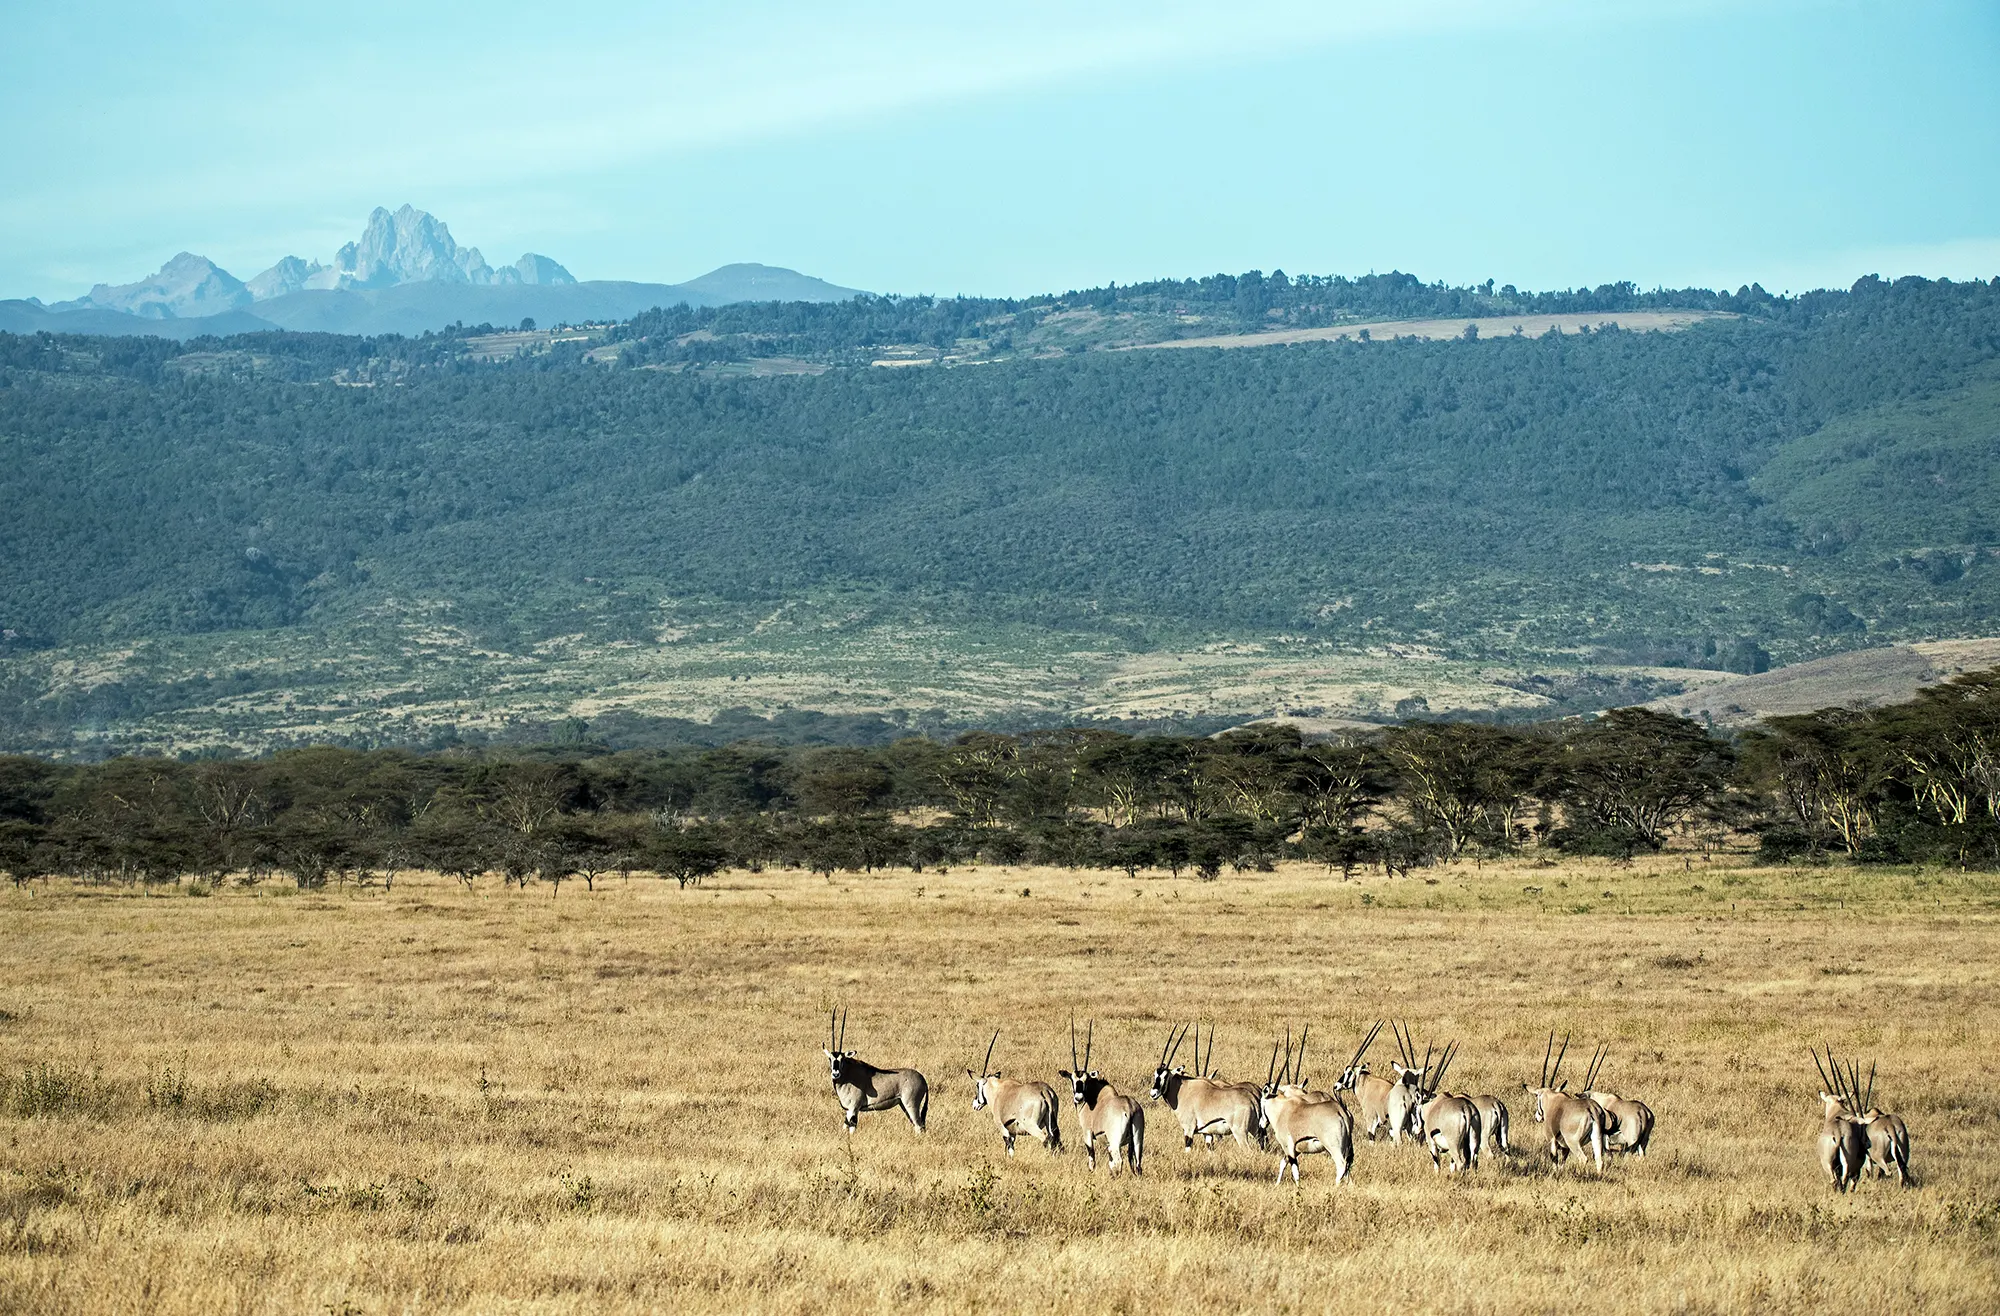 Safari in Kenia - Mount Kenya National Park